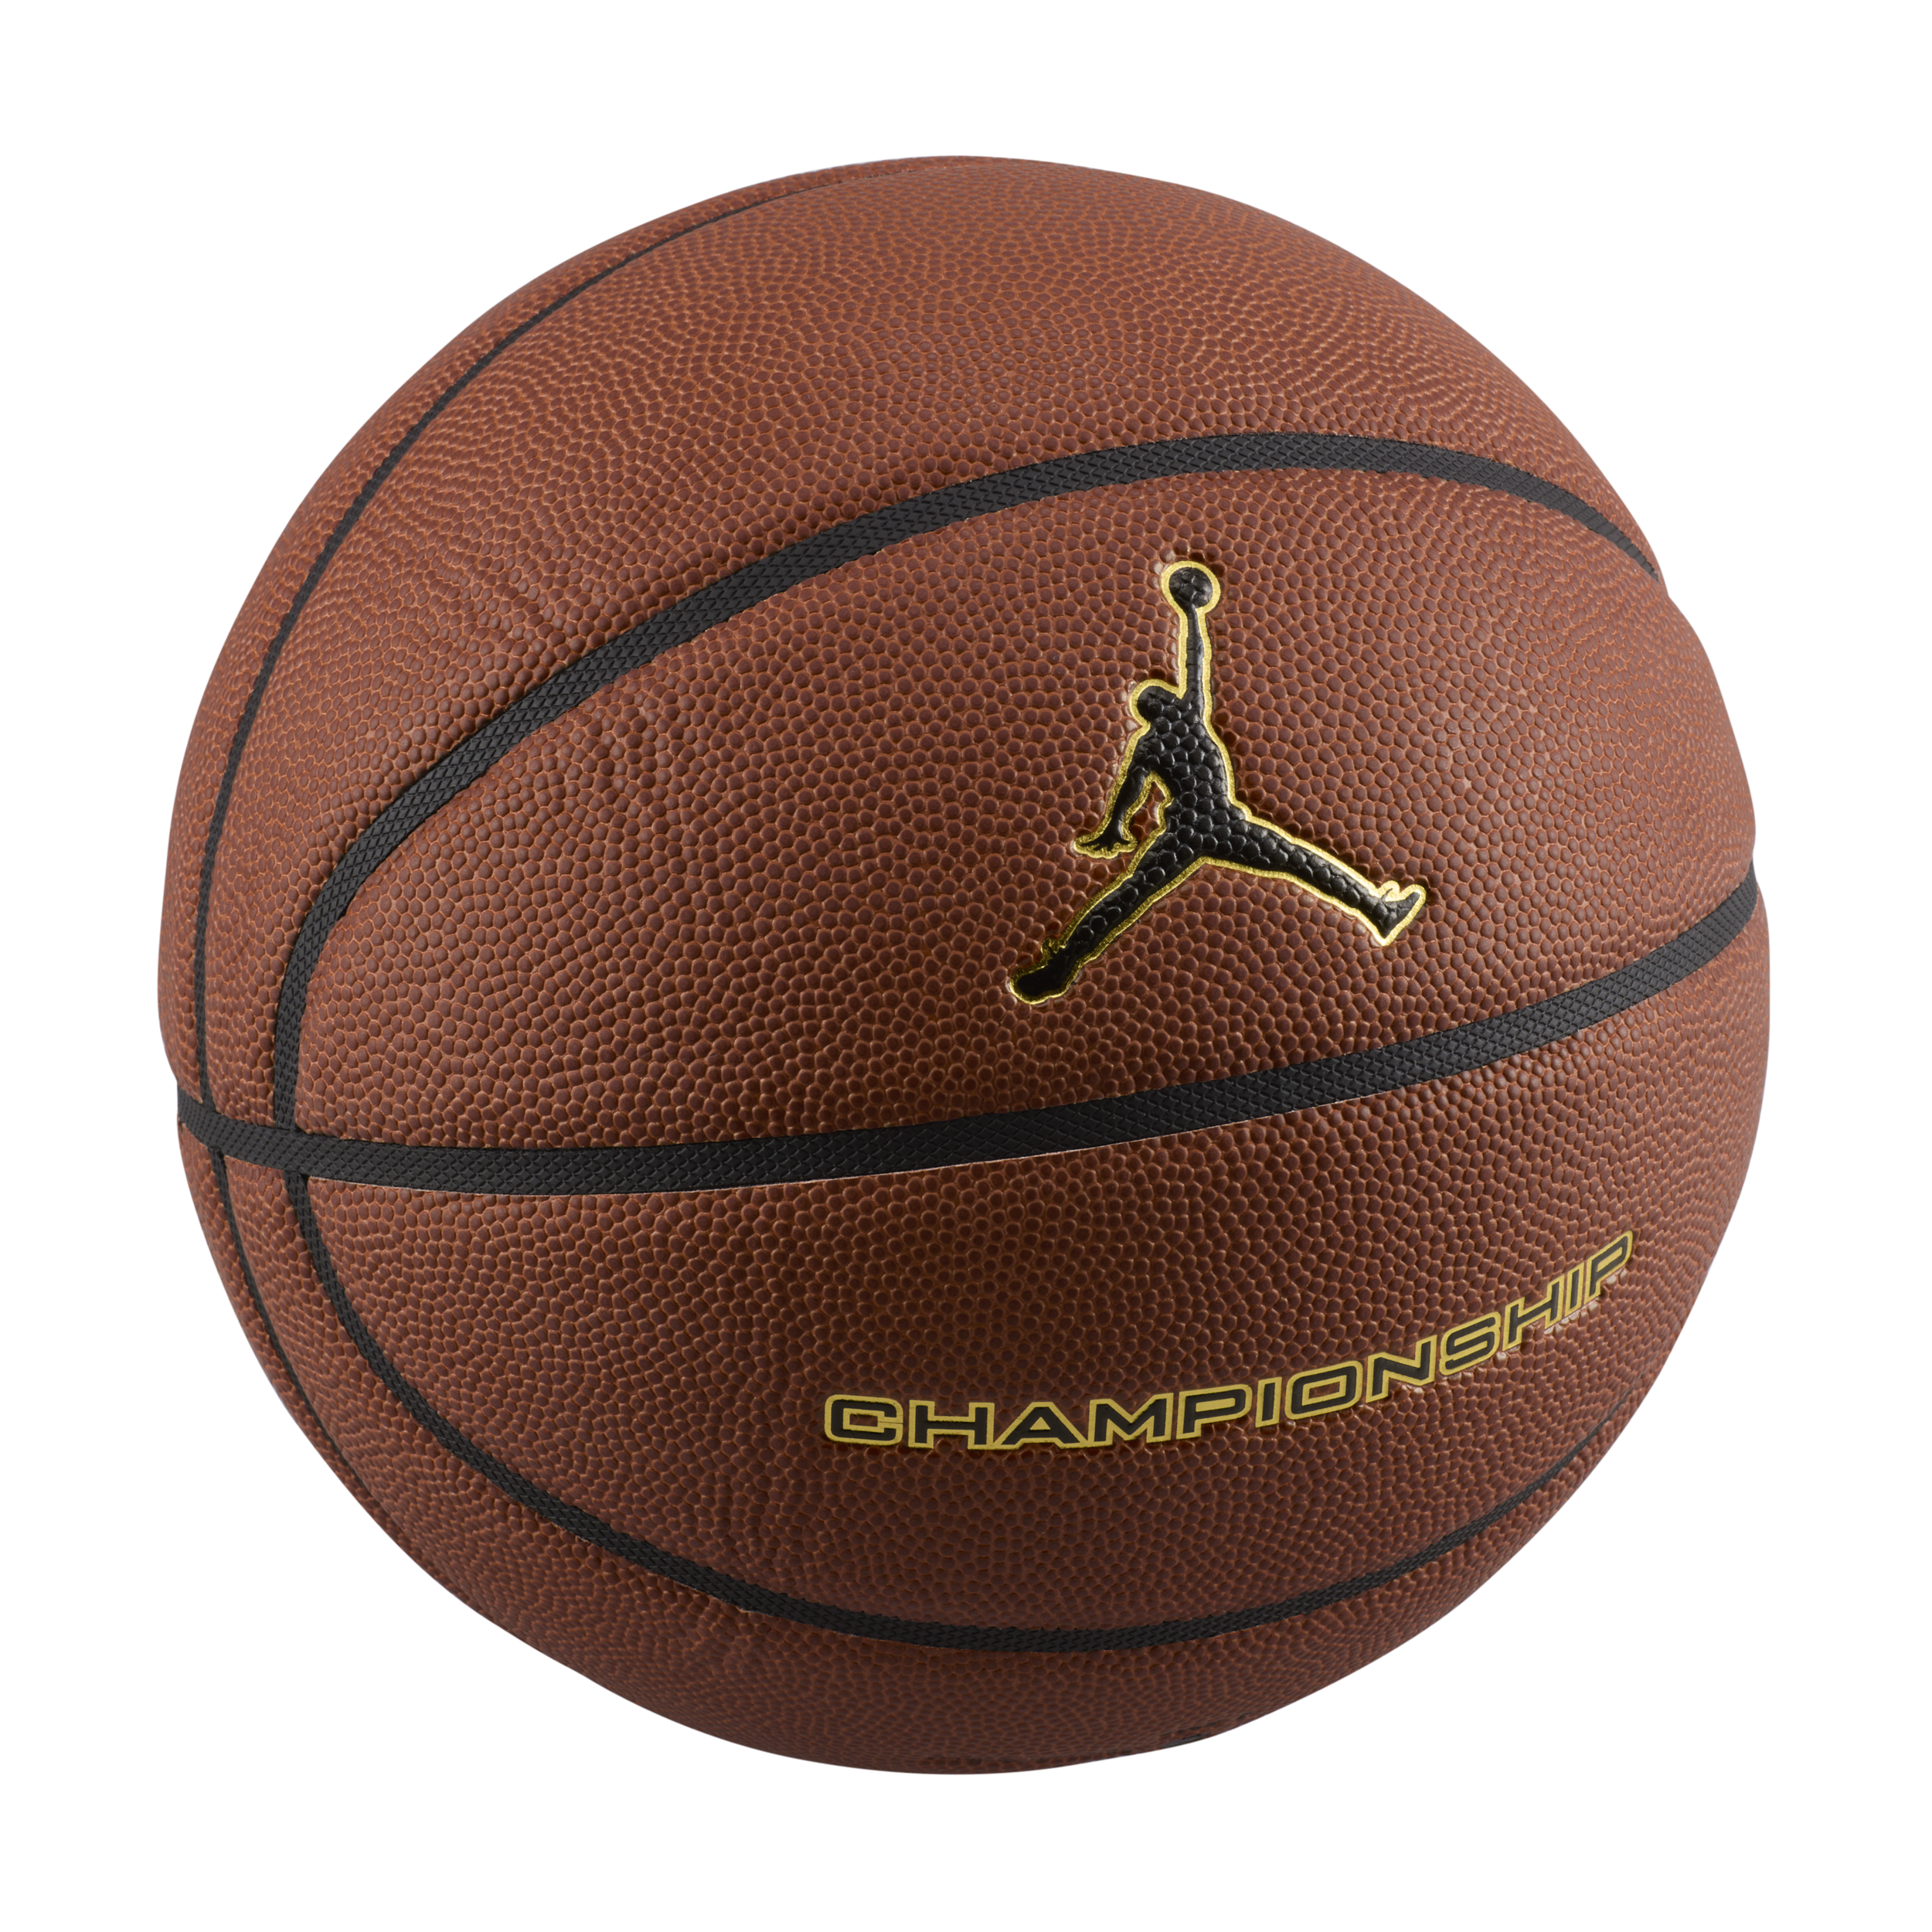 Jordan basketbal (zonder lucht) - Oranje